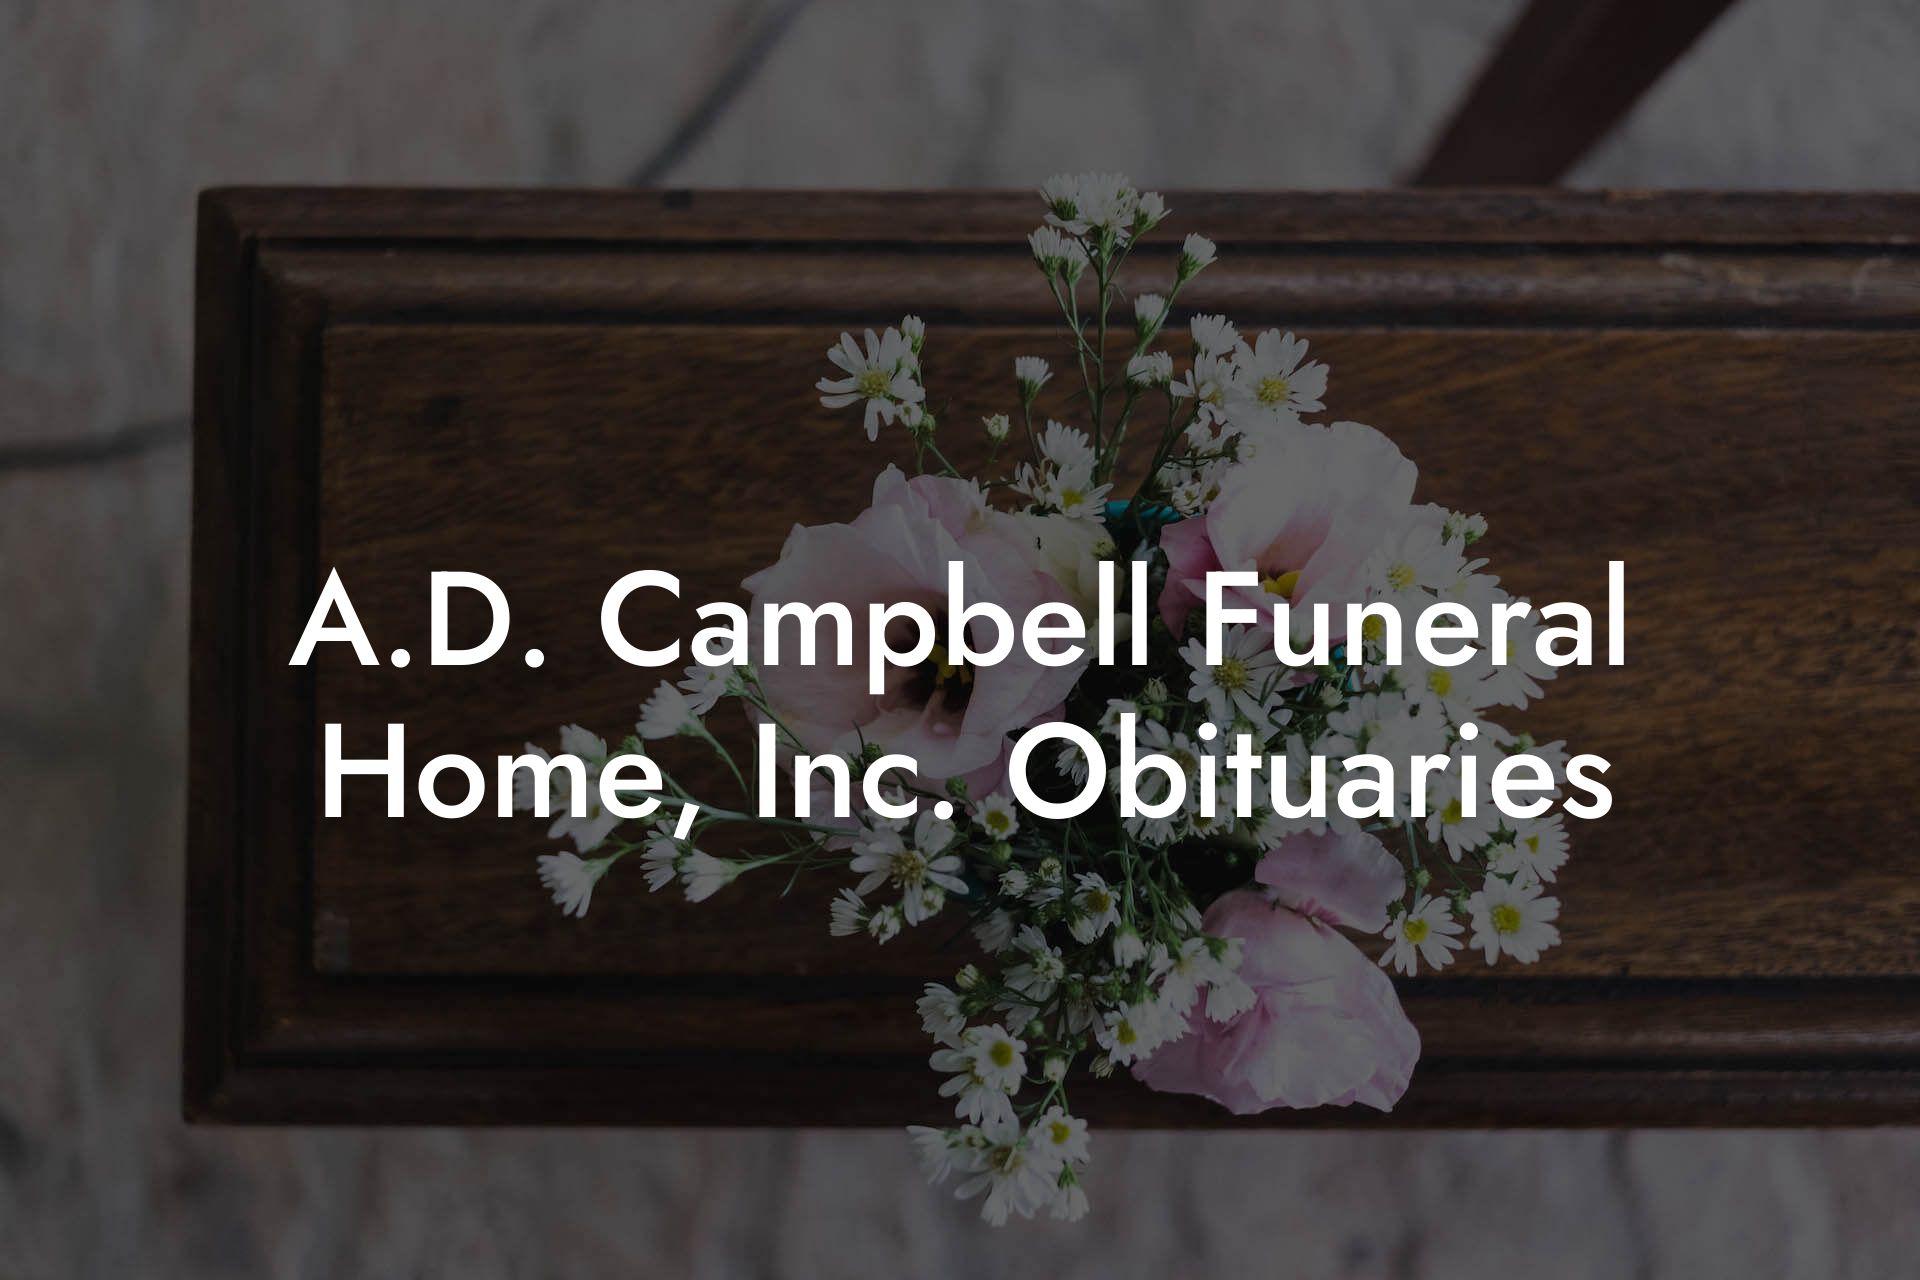 A.D. Campbell Funeral Home, Inc. Obituaries